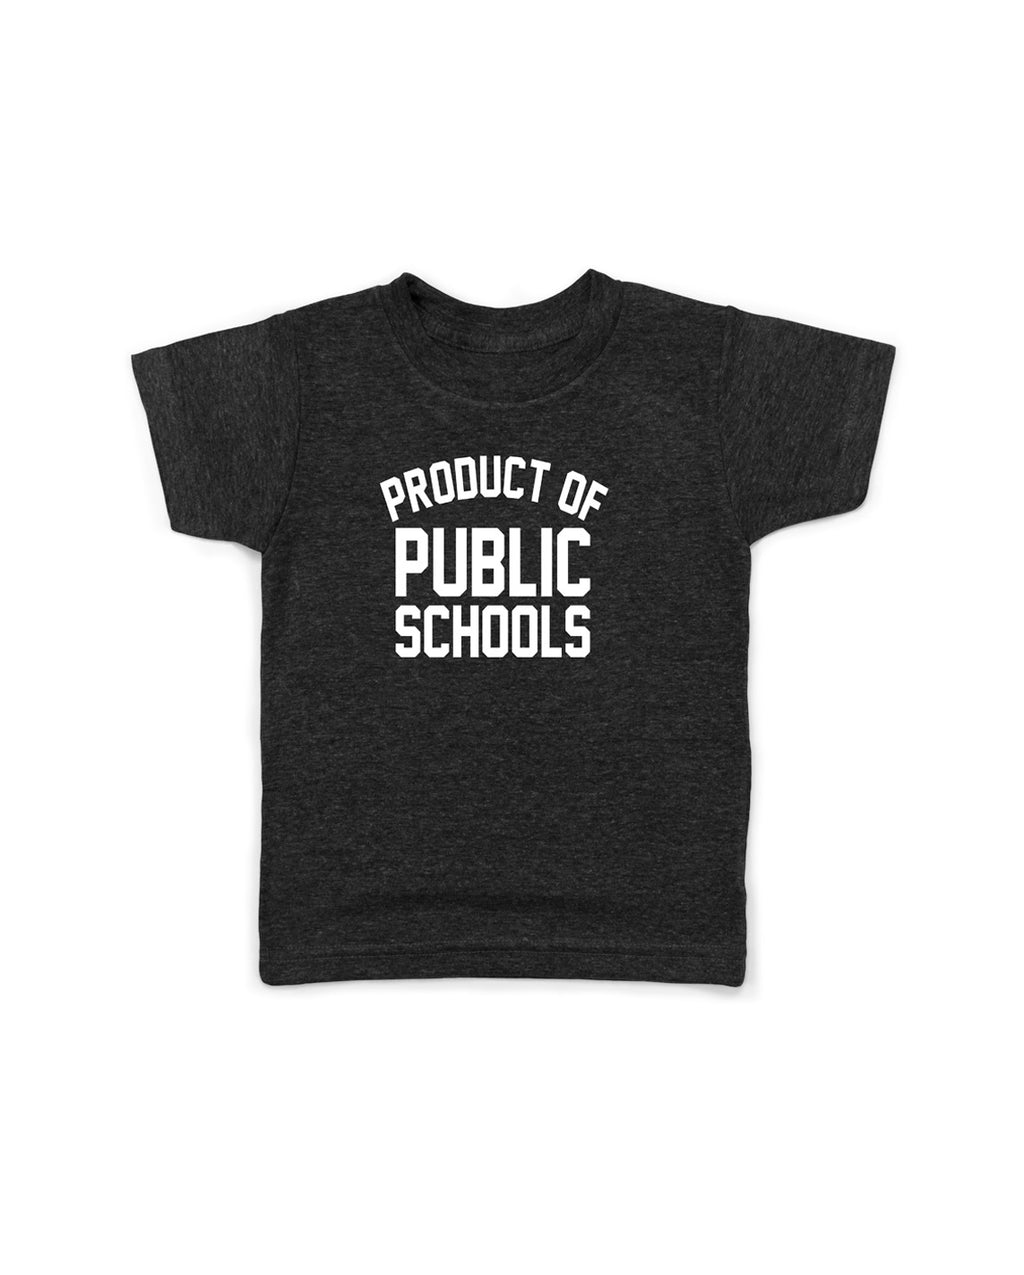 Kids | Product of Public Schools - Originalitees